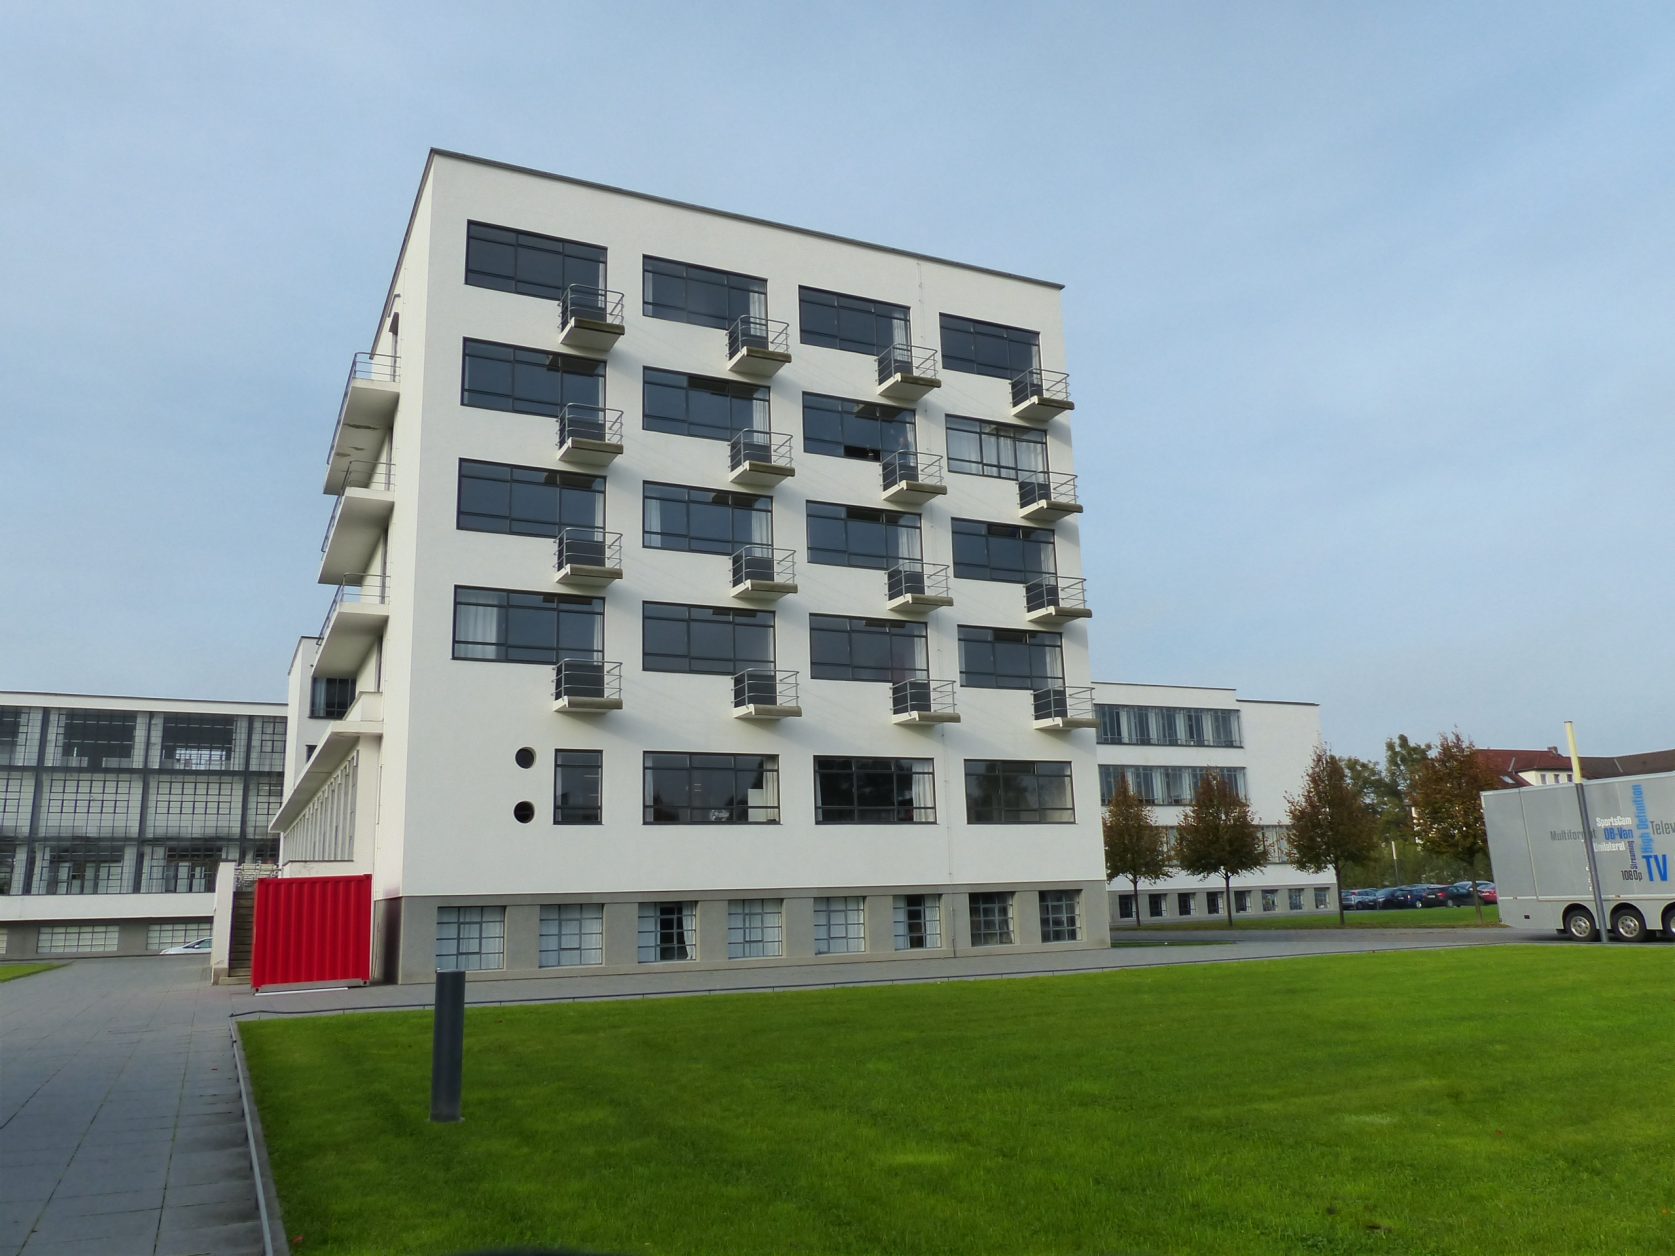 Bauhaus Dessau Sachsen-Anhalt